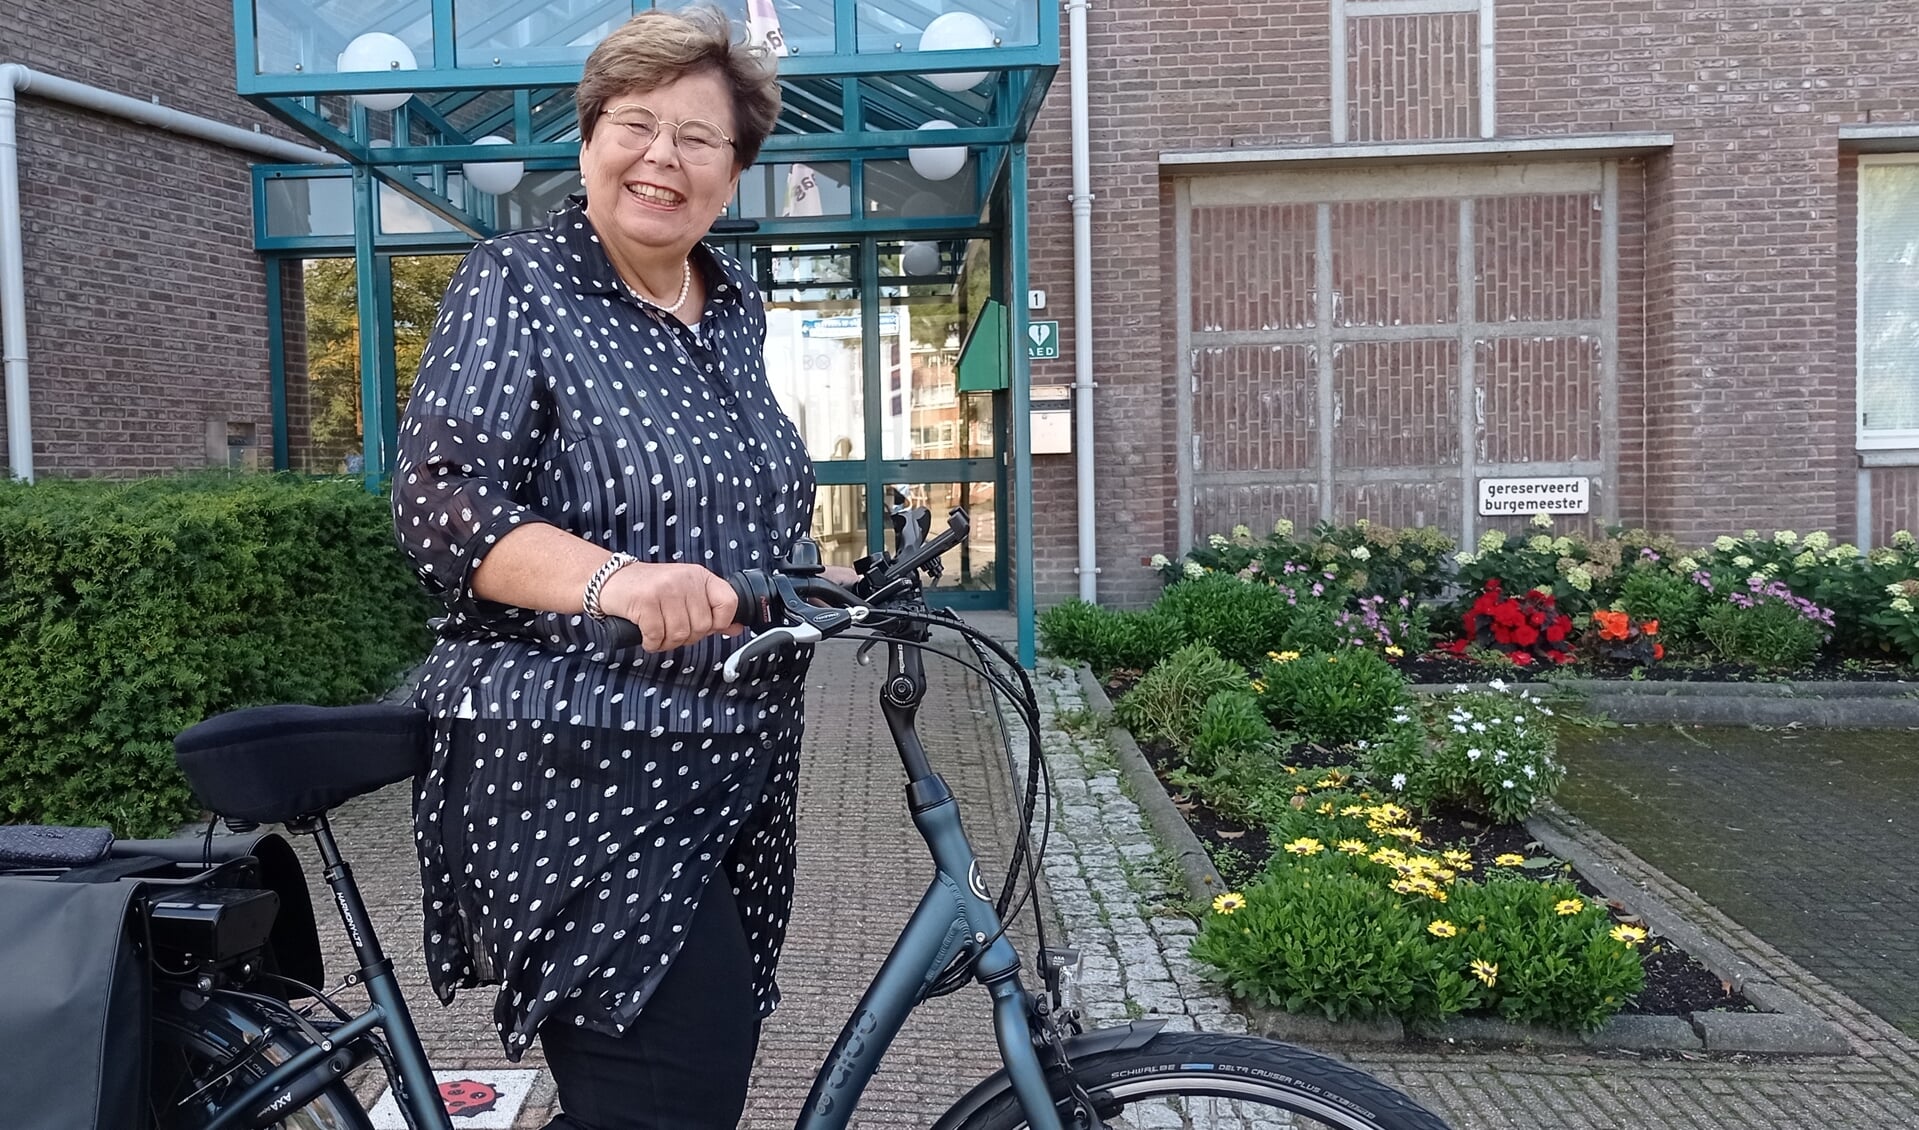 Burgemeester Marina van der Velde is klaar voor een nieuwe toekomst.